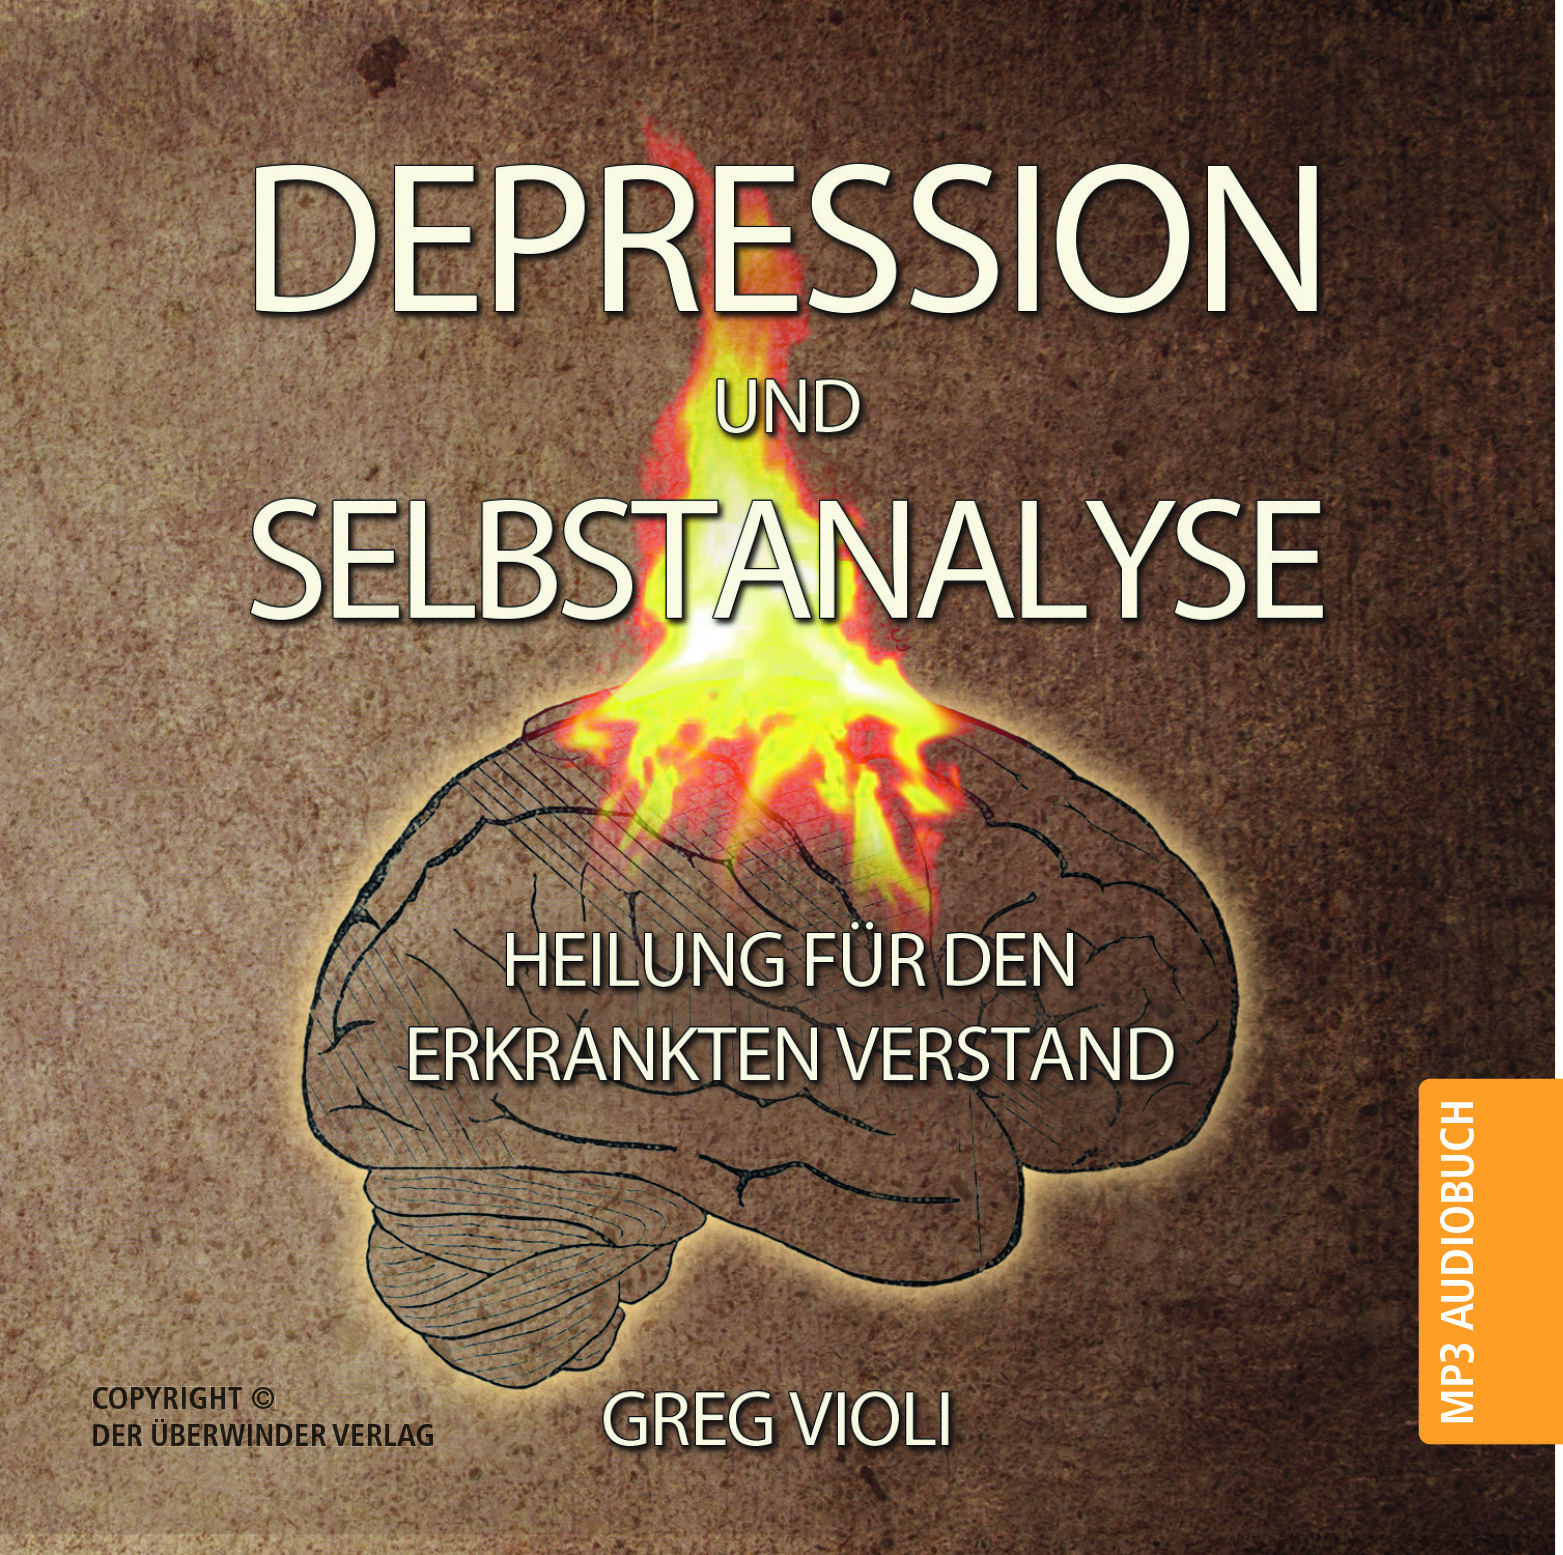 Depression und Selbstanalyse (MP3 CD Audio Hörbuch)|Heilung für den erkrankten Verstand